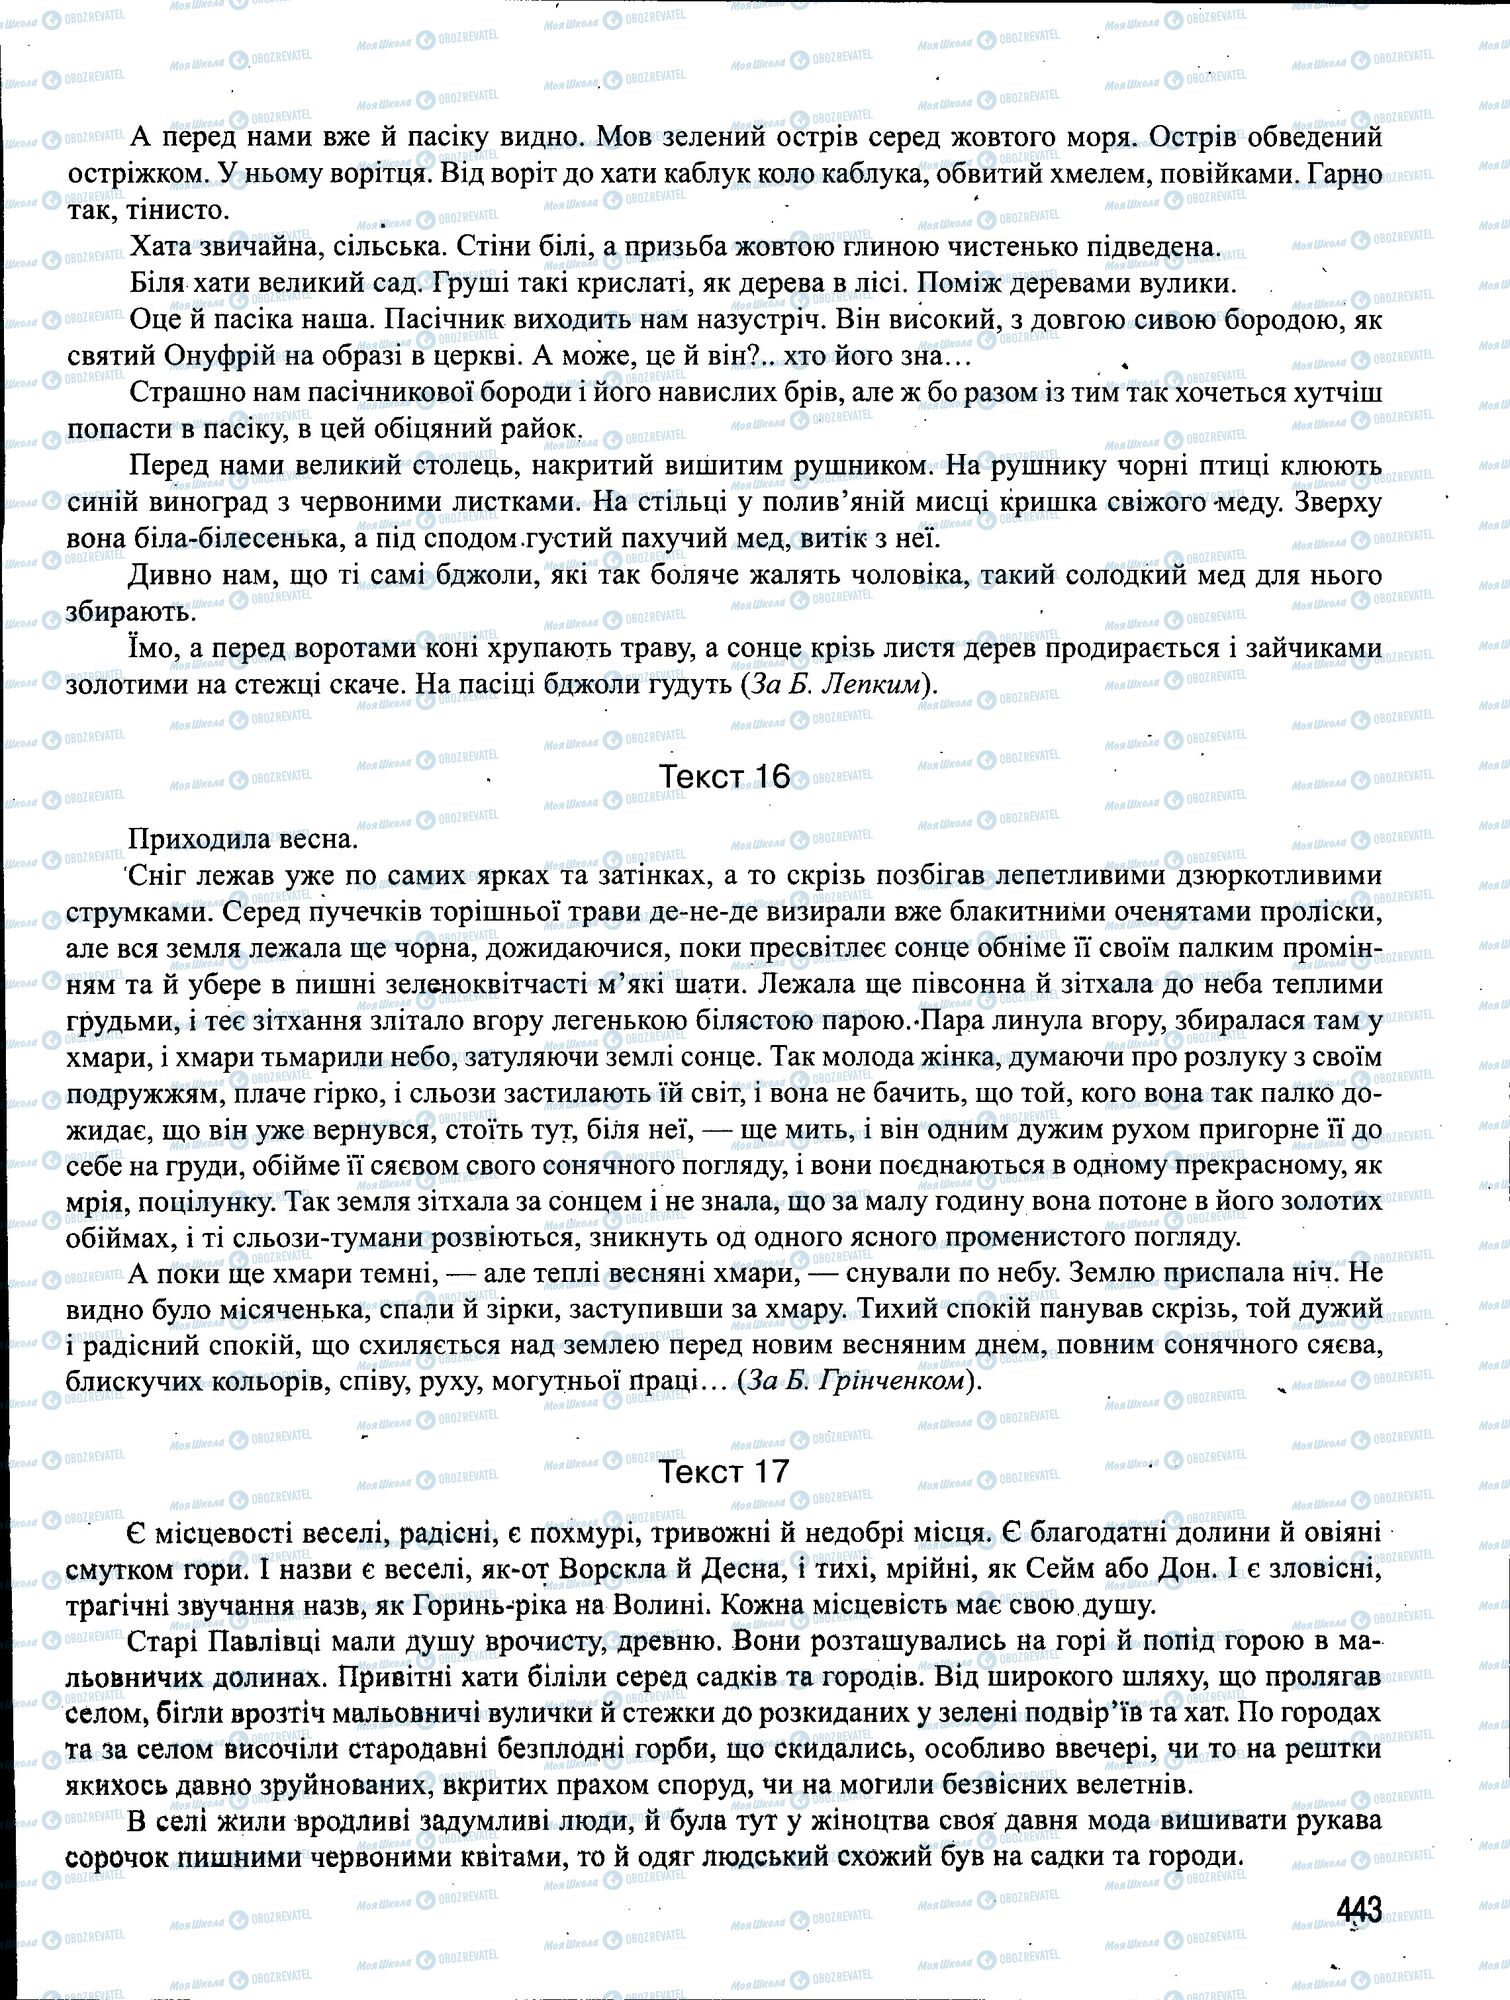 ЗНО Укр мова 11 класс страница 443